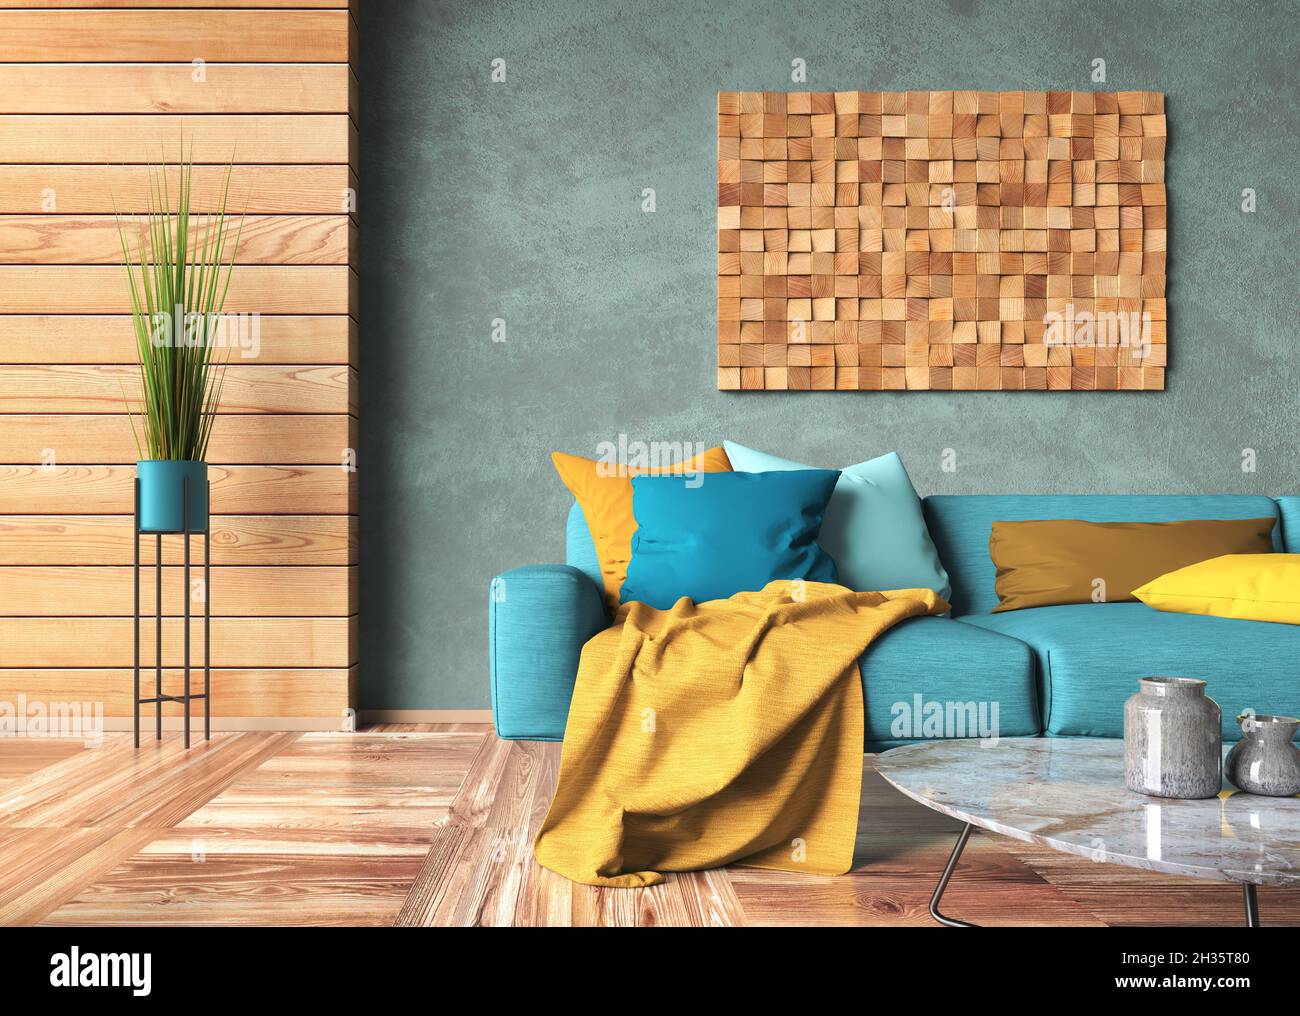 Diseño interior de sala de estar moderna con sofá turquesa y cojines  multicolores. Paneles de madera y paredes de estuco azul con decoración de  madera. Inicio desi Fotografía de stock - Alamy